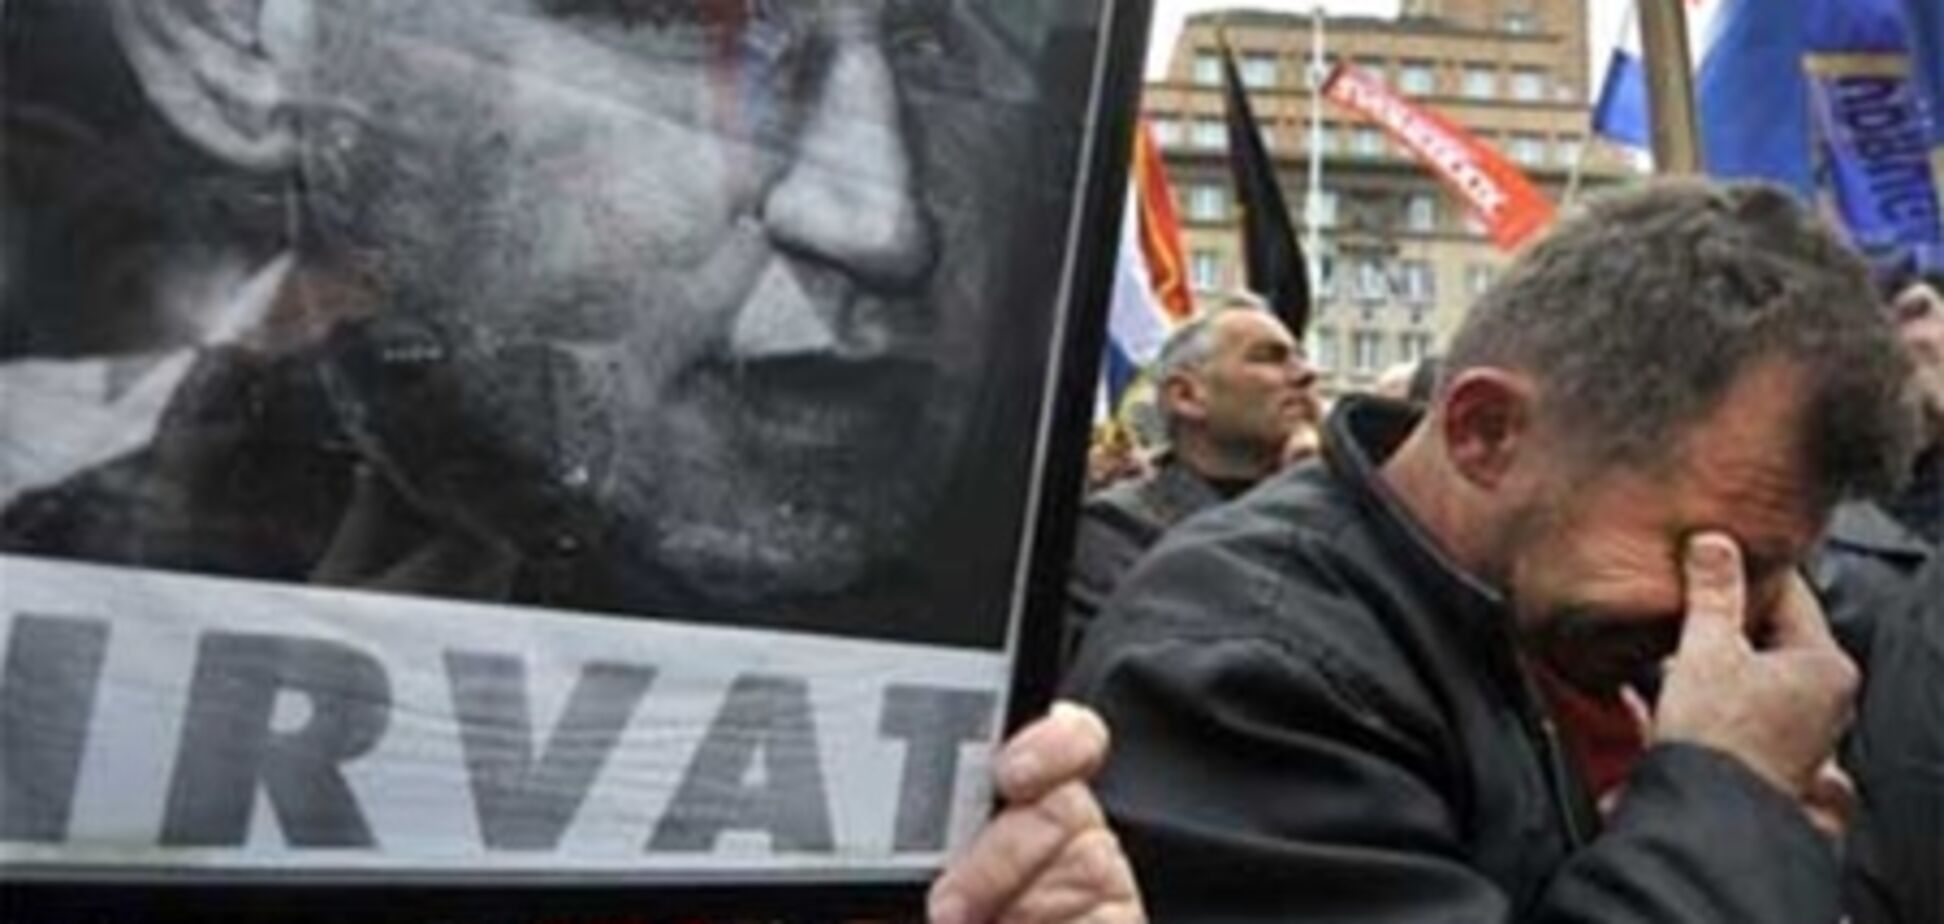 Революция докатилась до Европы: Массовые выступления начались в Хорватии